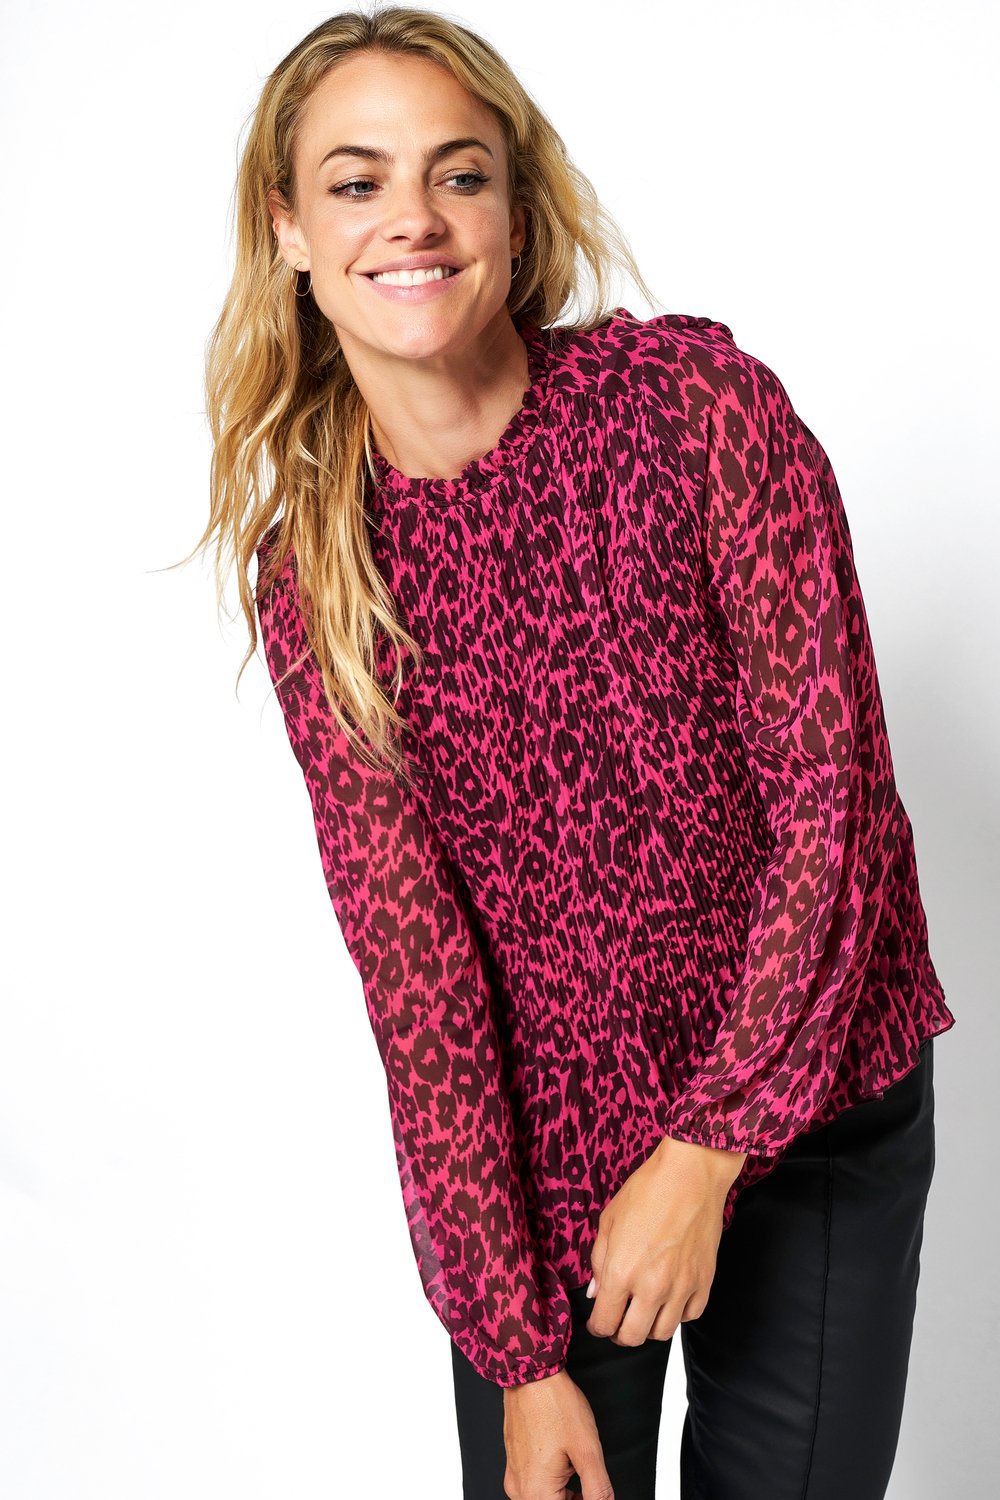 Chiffon blouse with leo print | Style »Amalie« pink